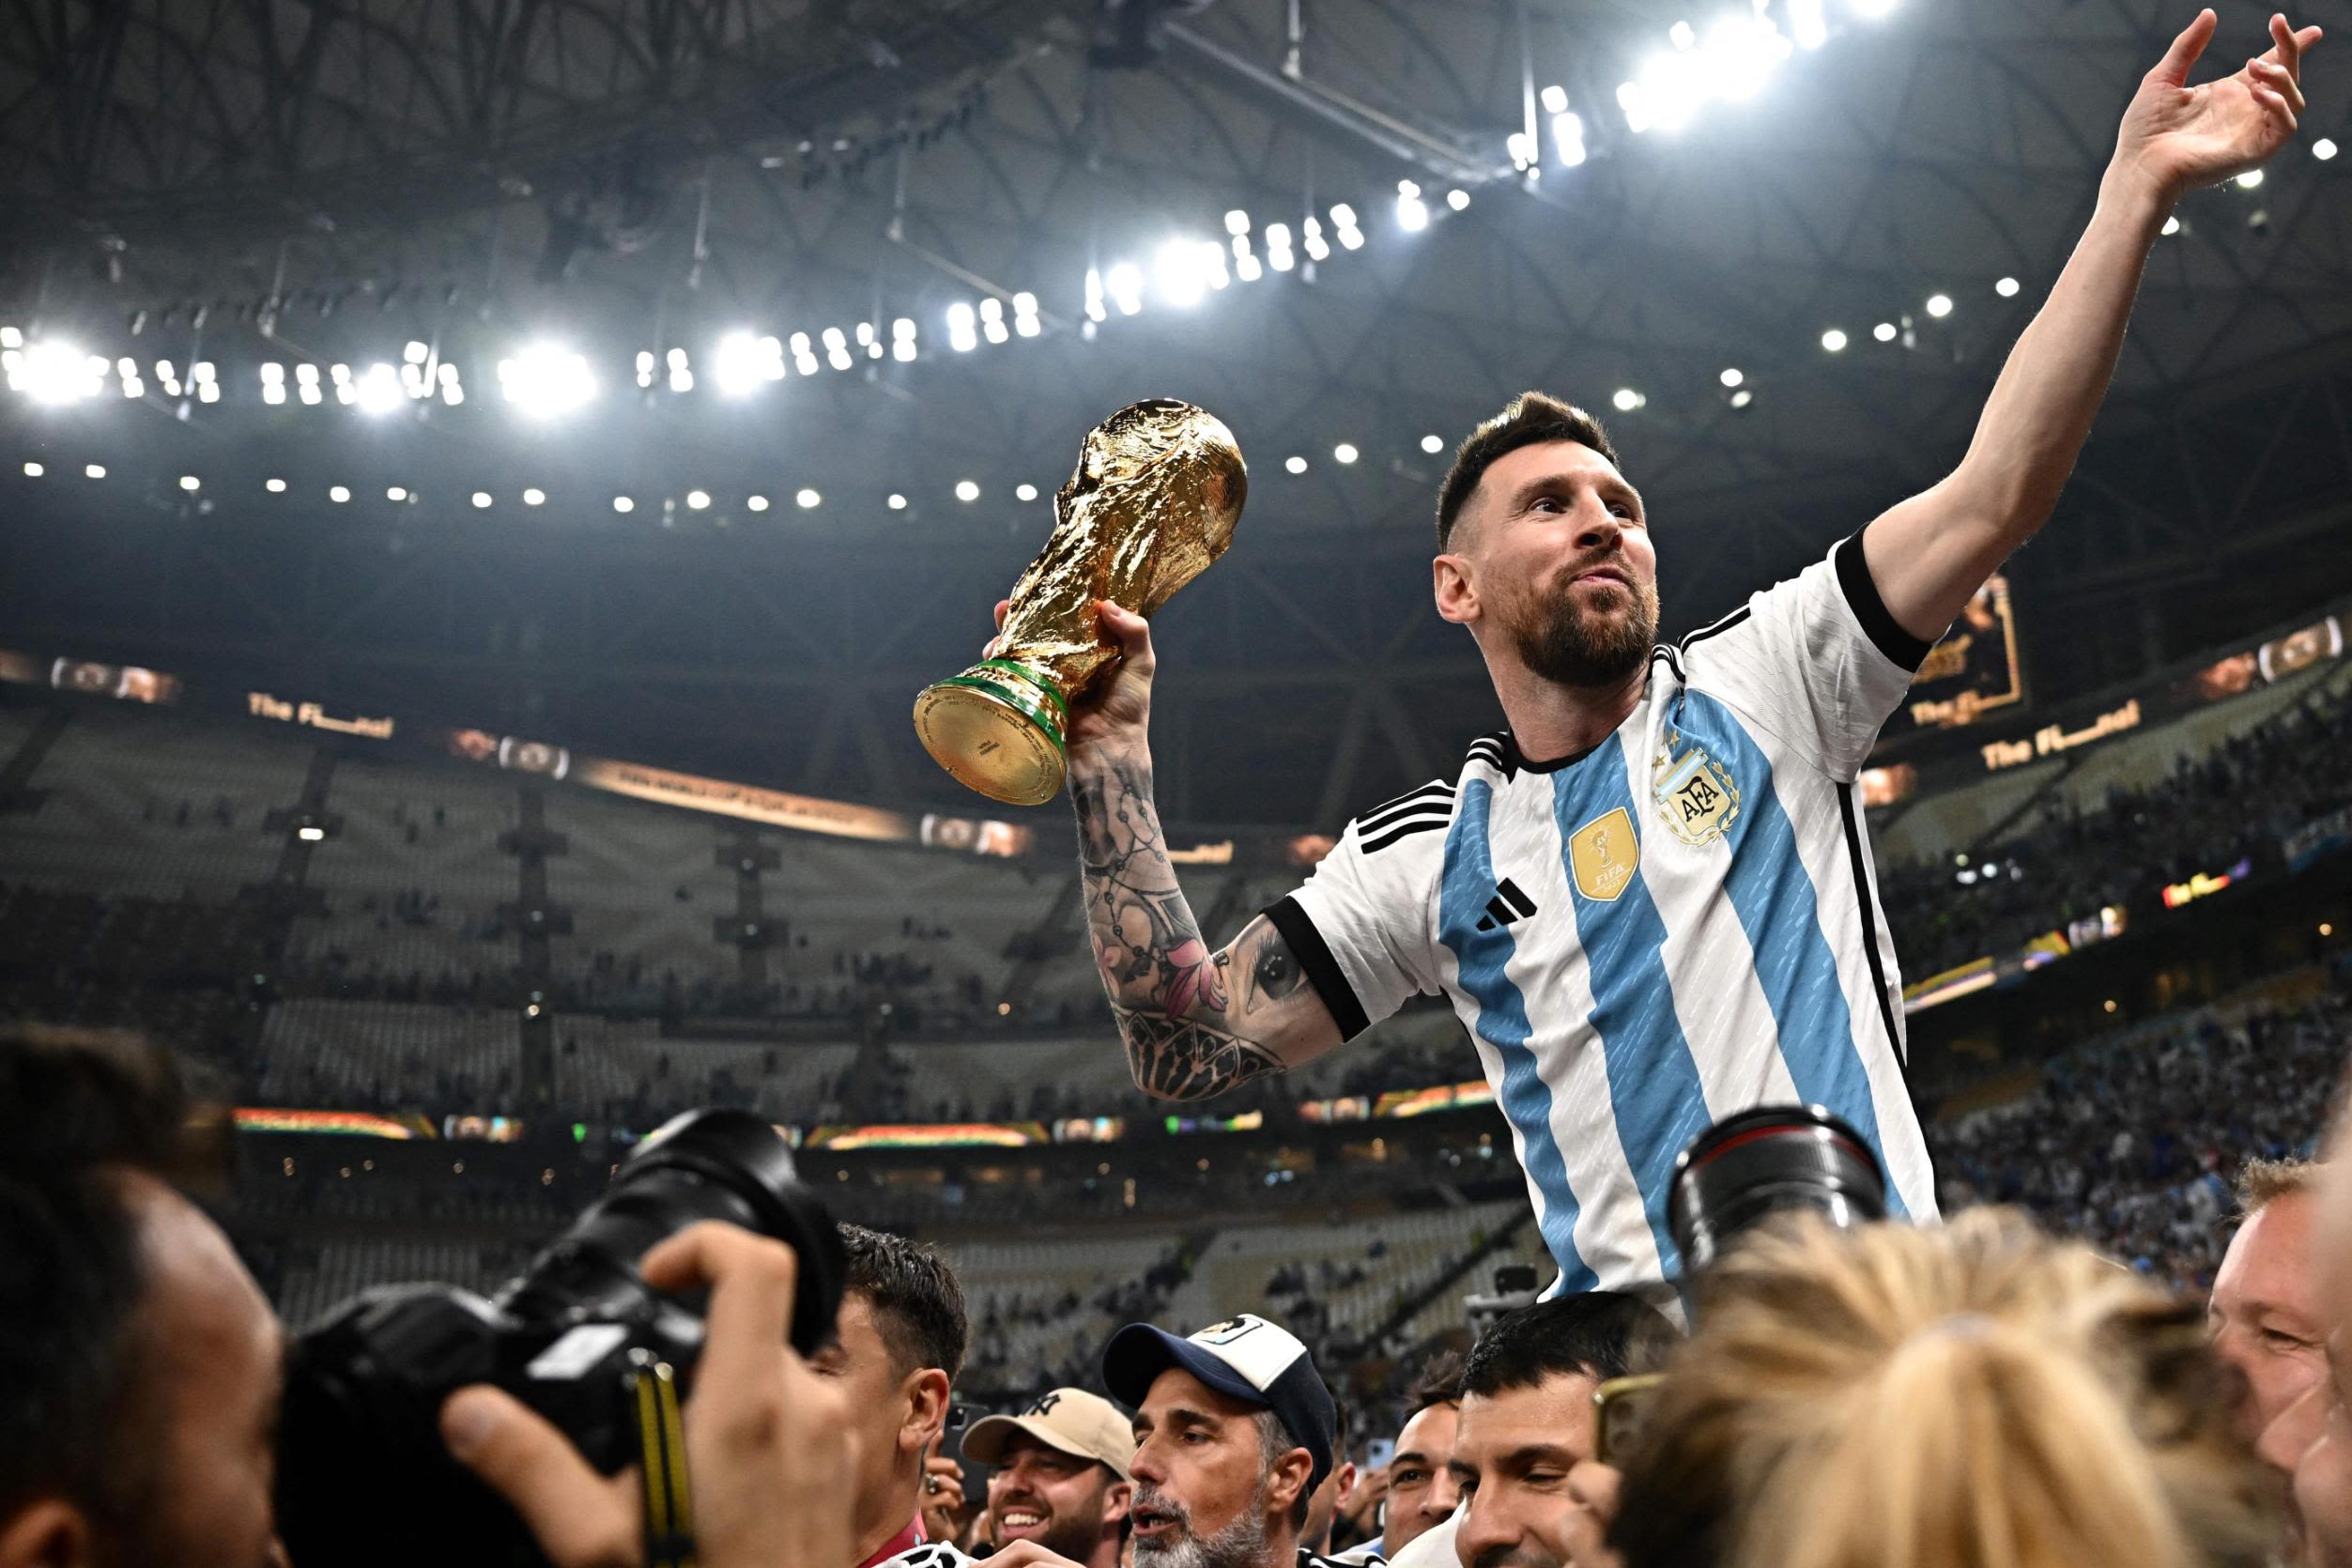 Những khoảnh khắc của tiền đạo Lionel Messi cùng những chiếc bóng đá đầy hứng thú sẽ làm cho bạn đắm chìm vào thế giới của bóng đá. Chụp ảnh chuyên nghiệp và bộ sưu tập ảnh sống động đang chờ đón bạn.